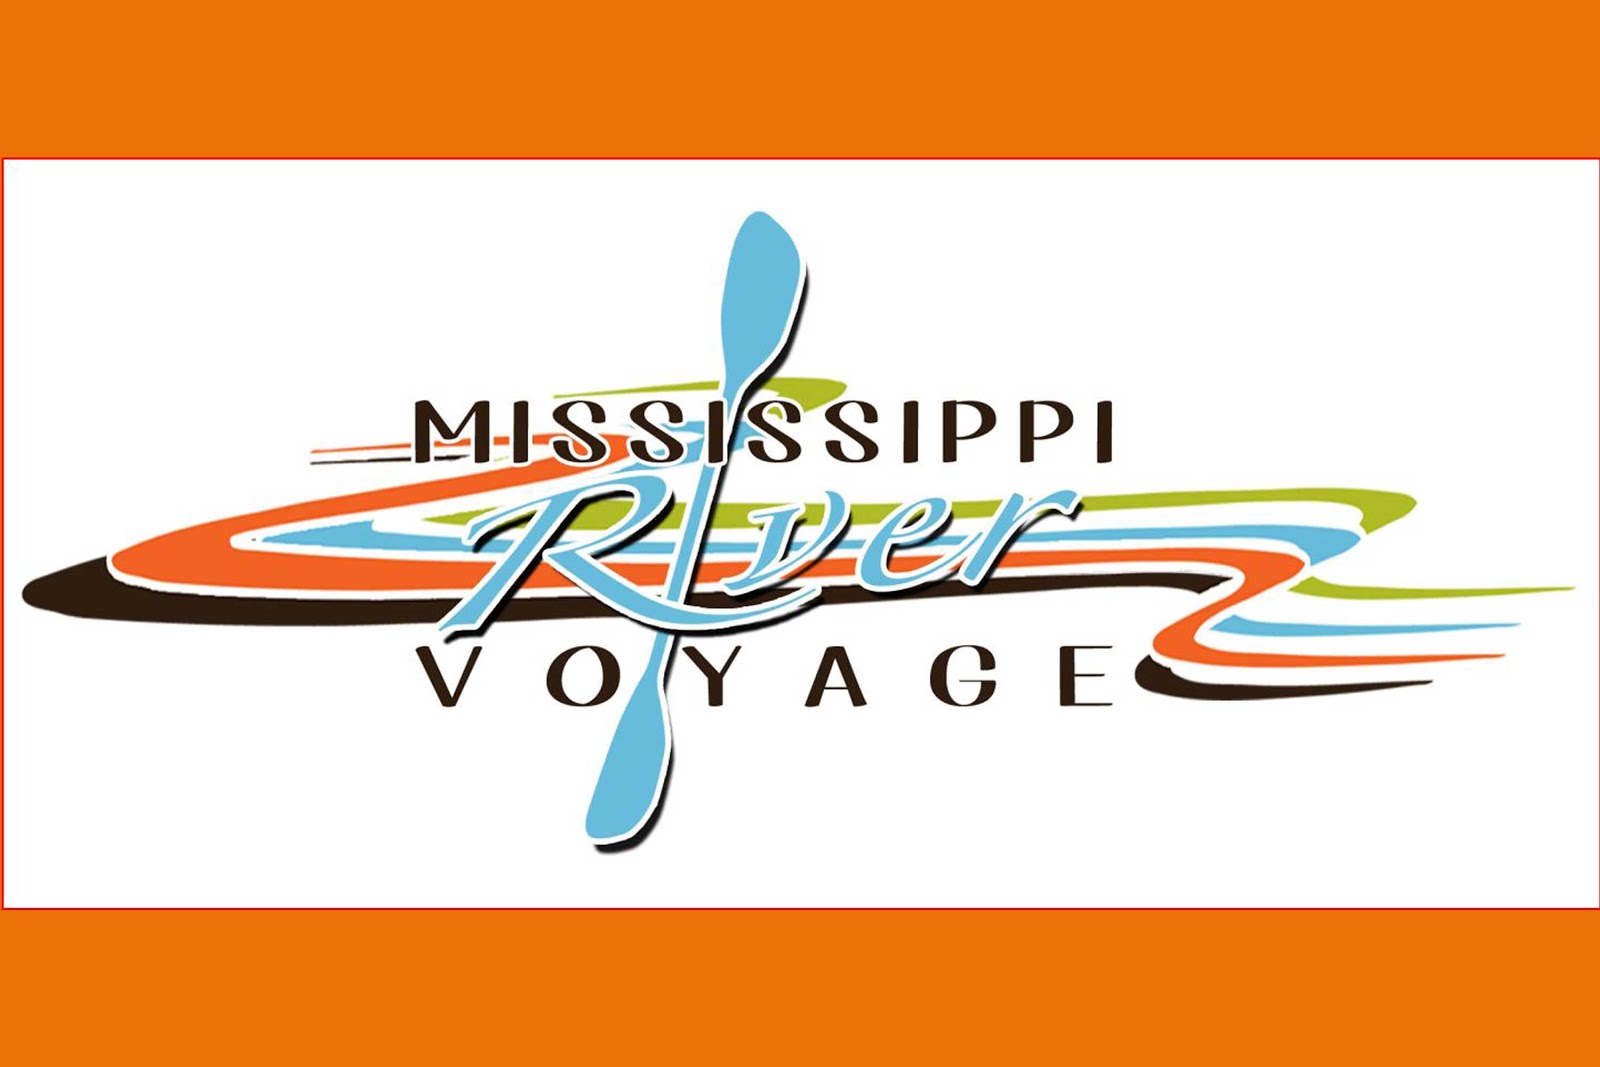 Mississippi River Voyage - 2014 logo